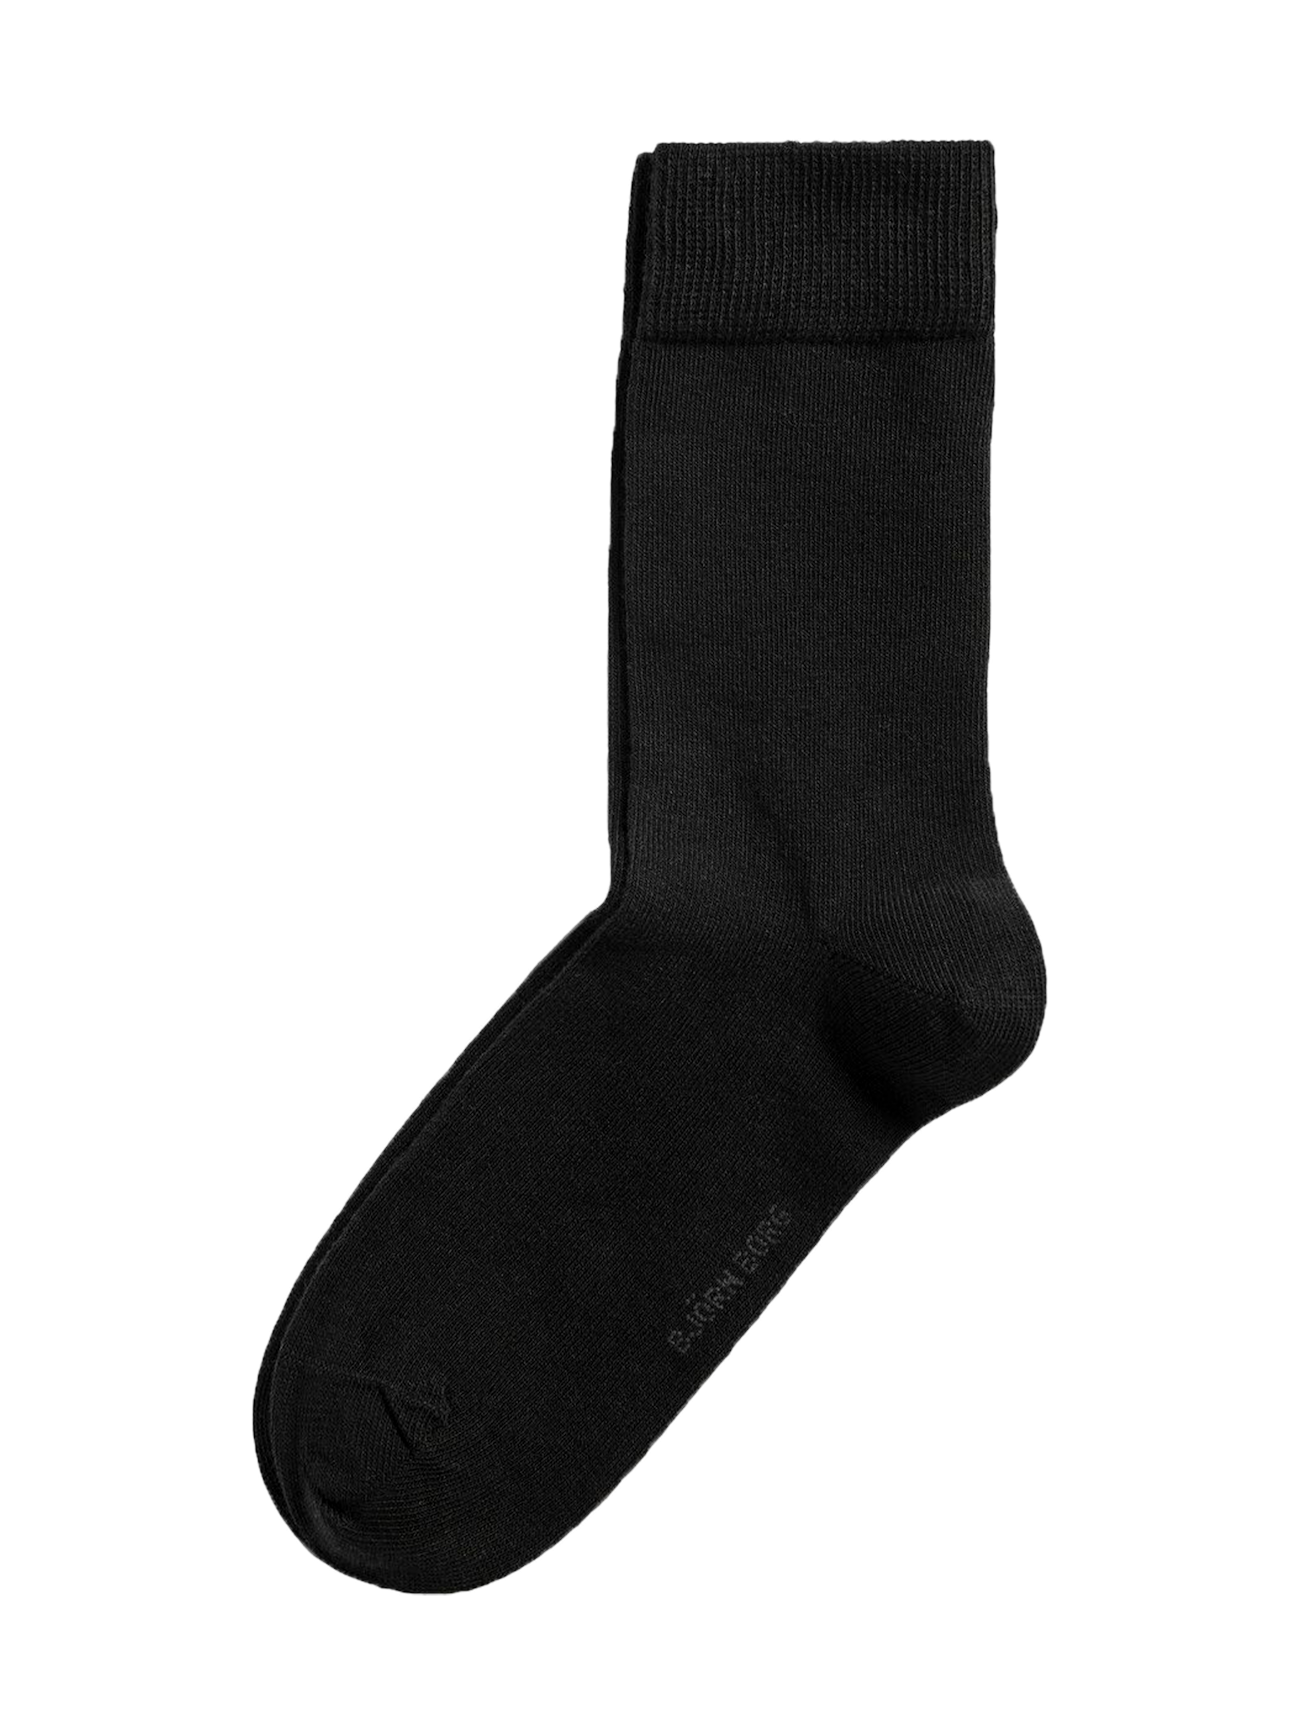 The Core Sock Black